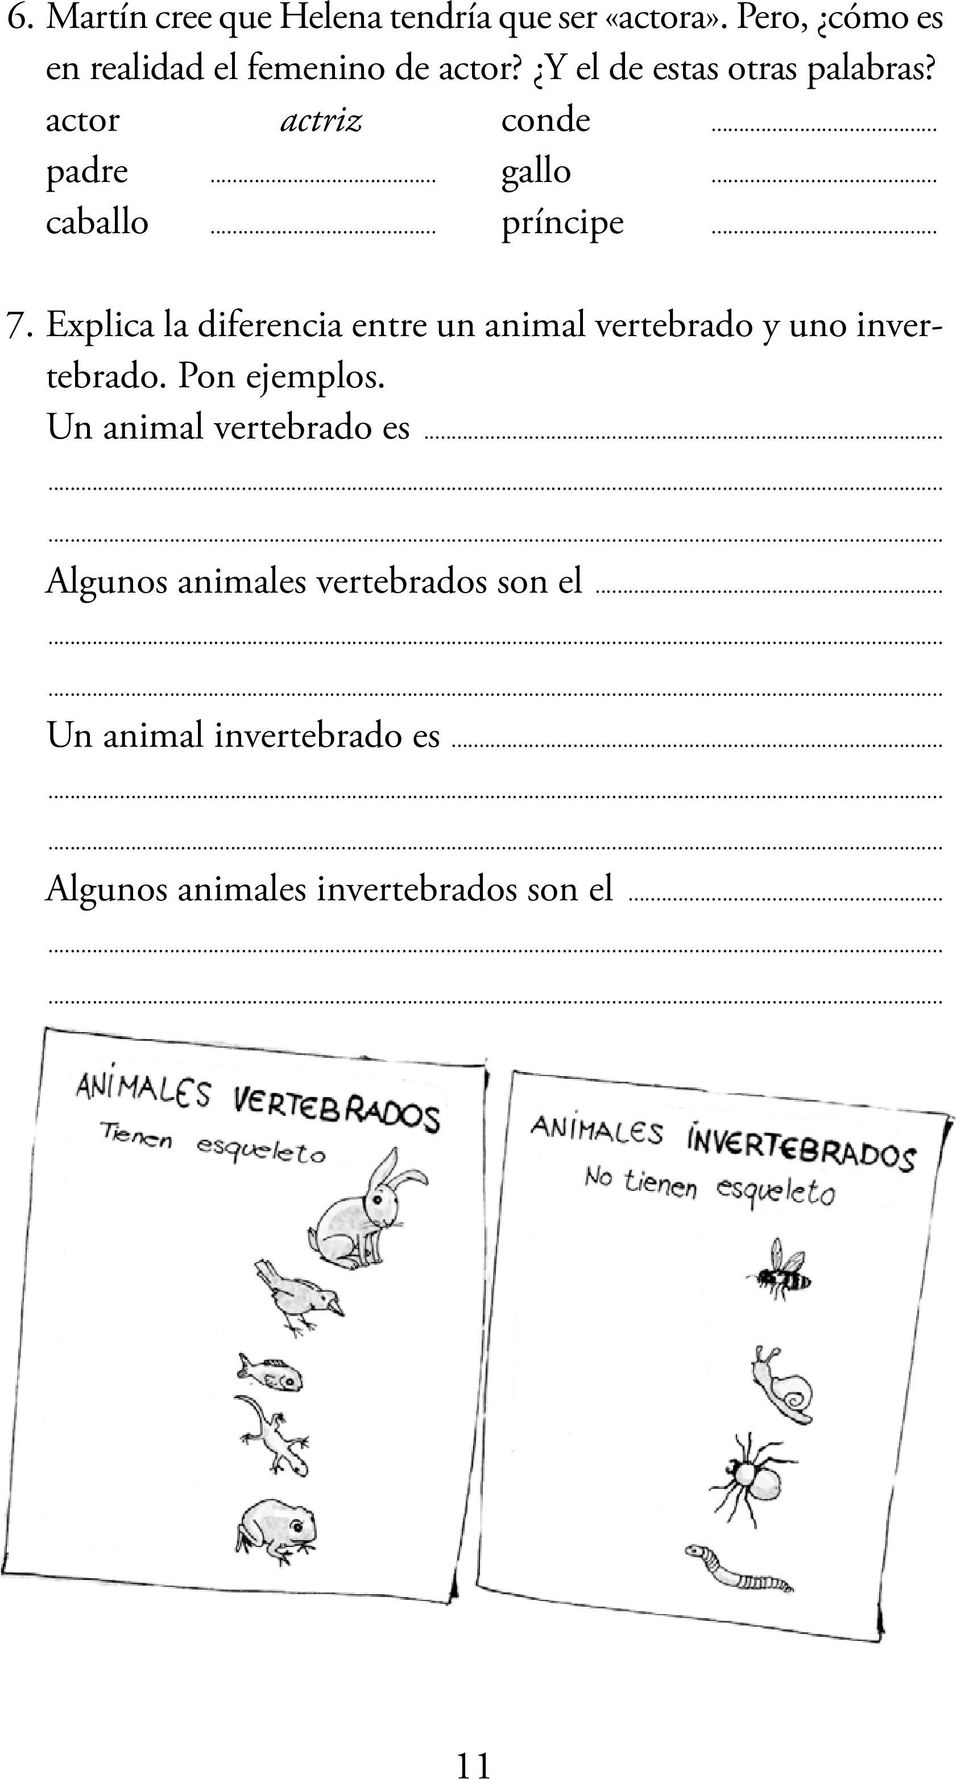 Explica la diferencia entre un animal vertebrado y uno invertebrado. Pon ejemplos.